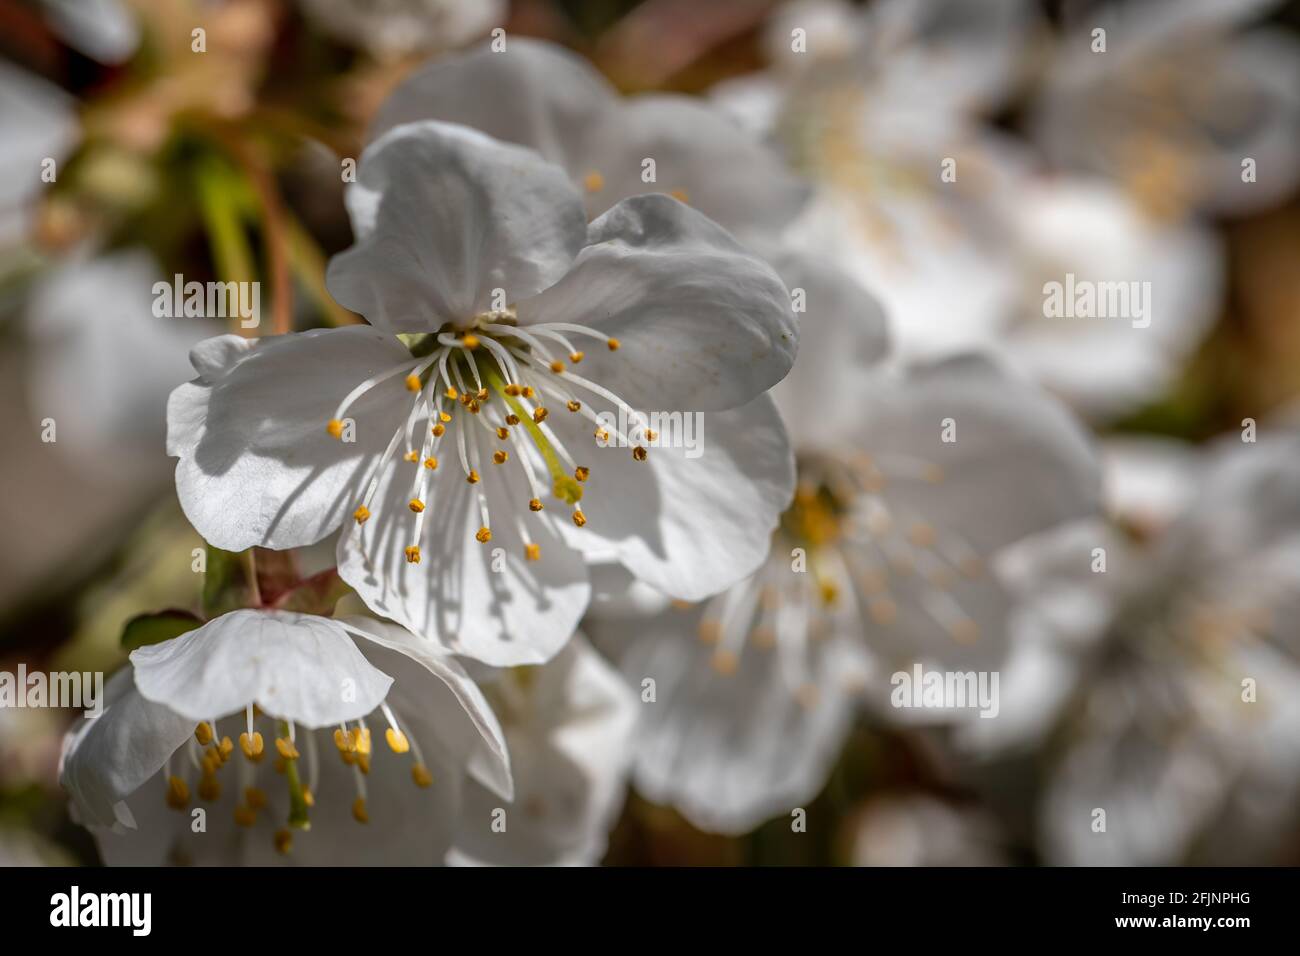 Blossom of the Prunus Avium 'Nana' tree Stock Photo